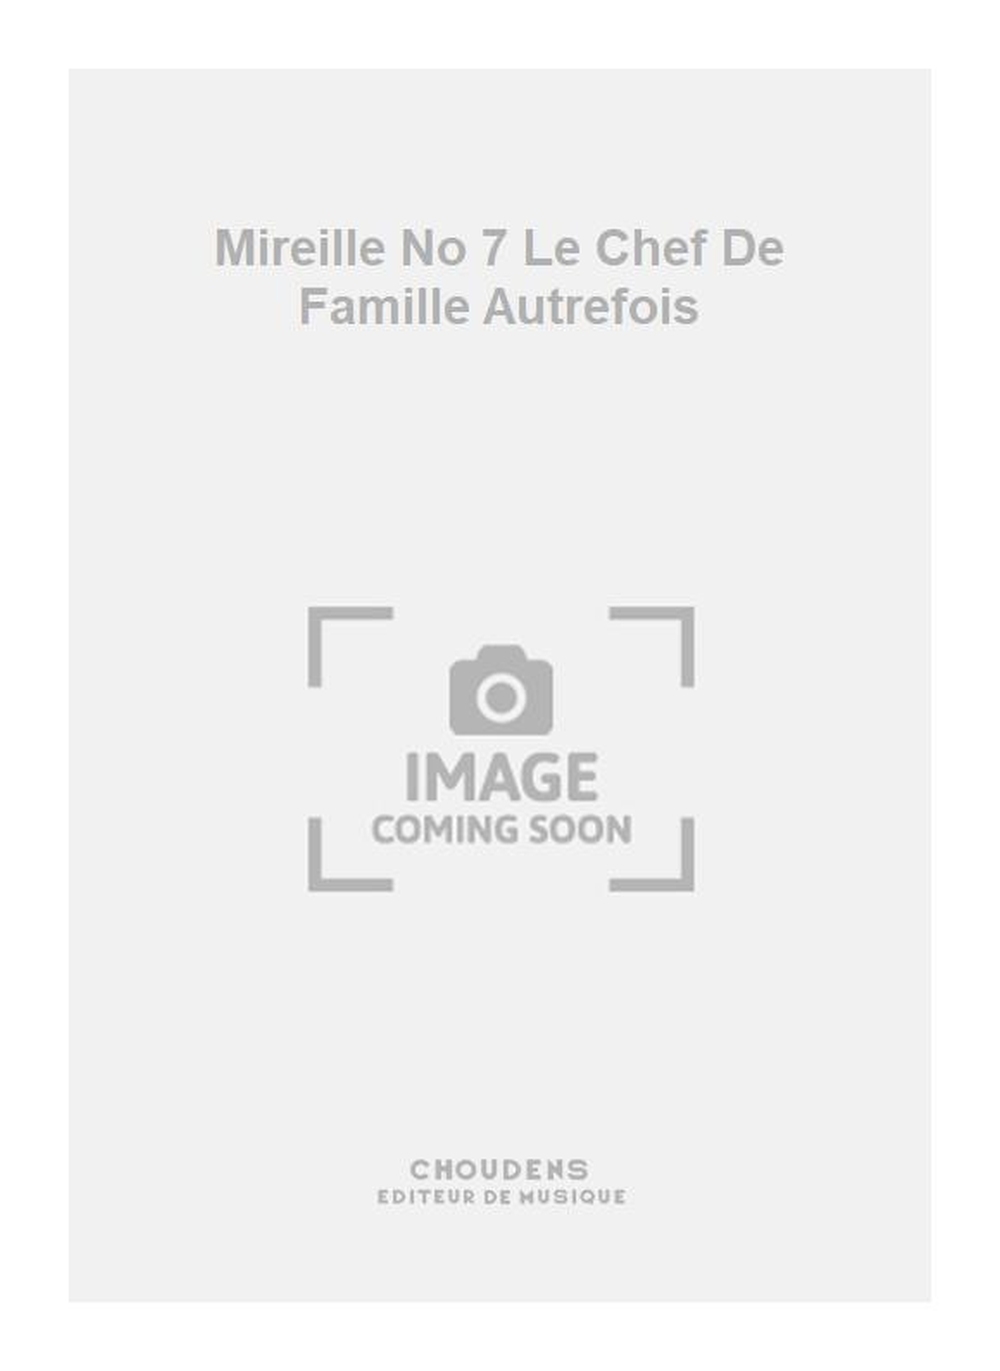 Charles Gounod: Mireille No 7 Le Chef De Famille Autrefois